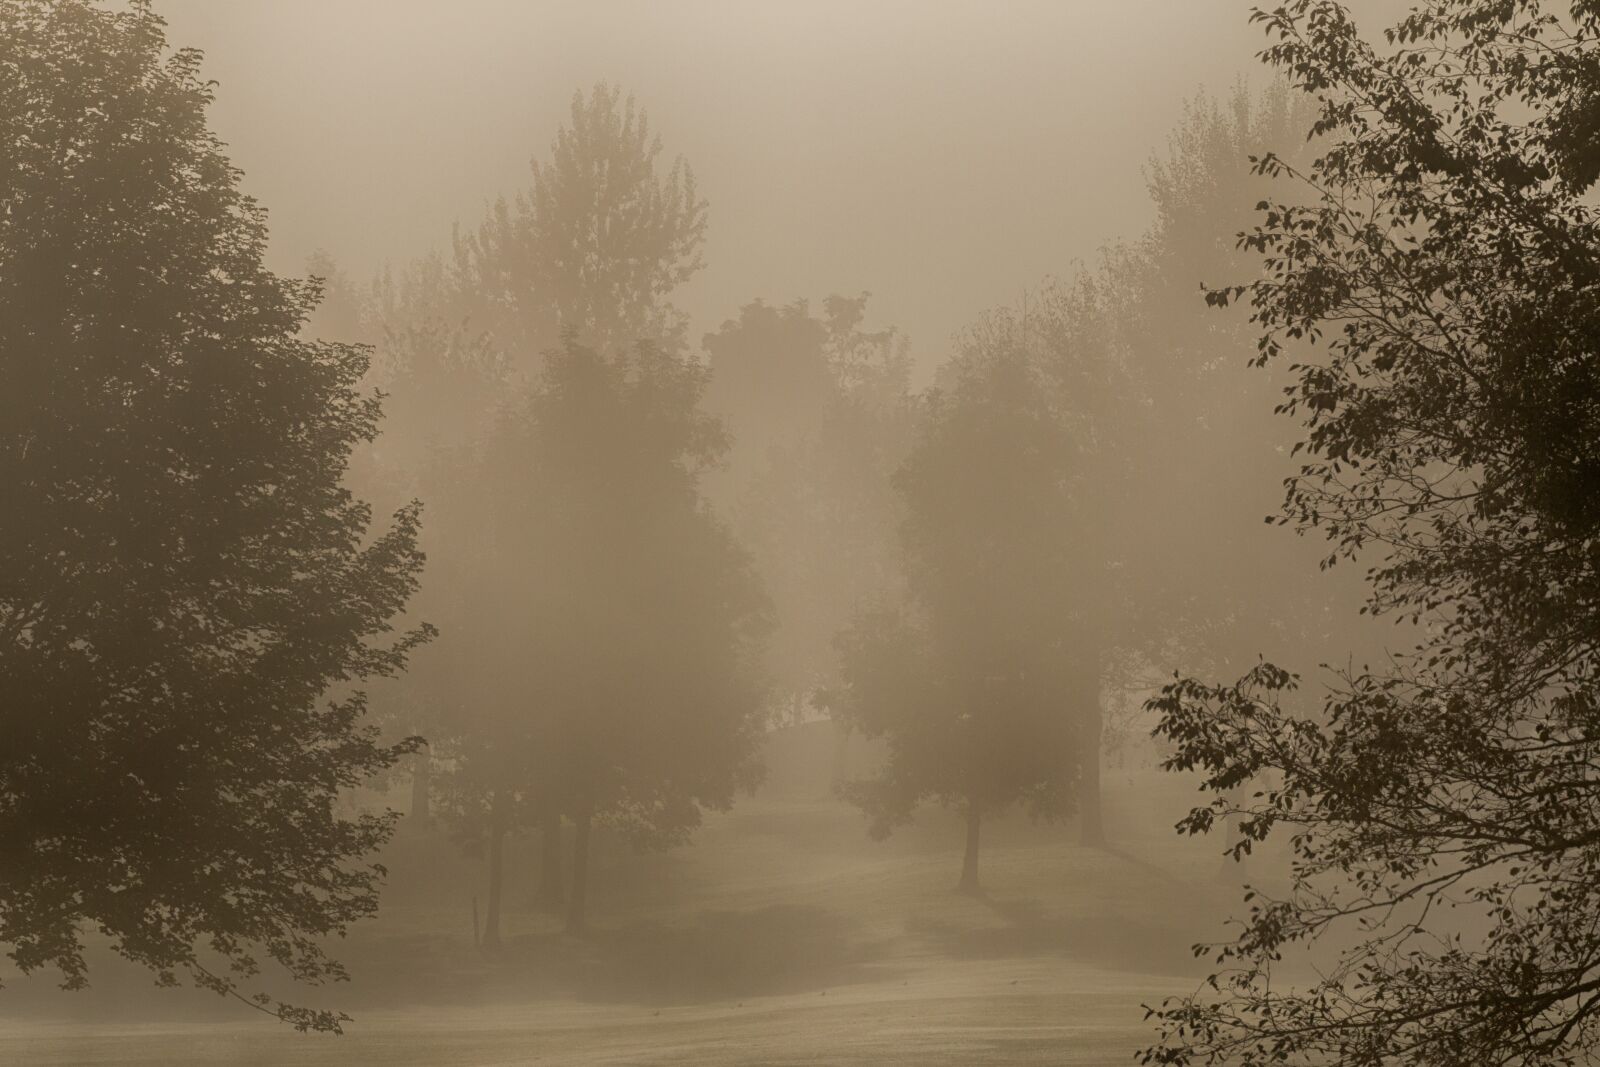 Canon EOS 70D sample photo. Fog, trees, autumn photography